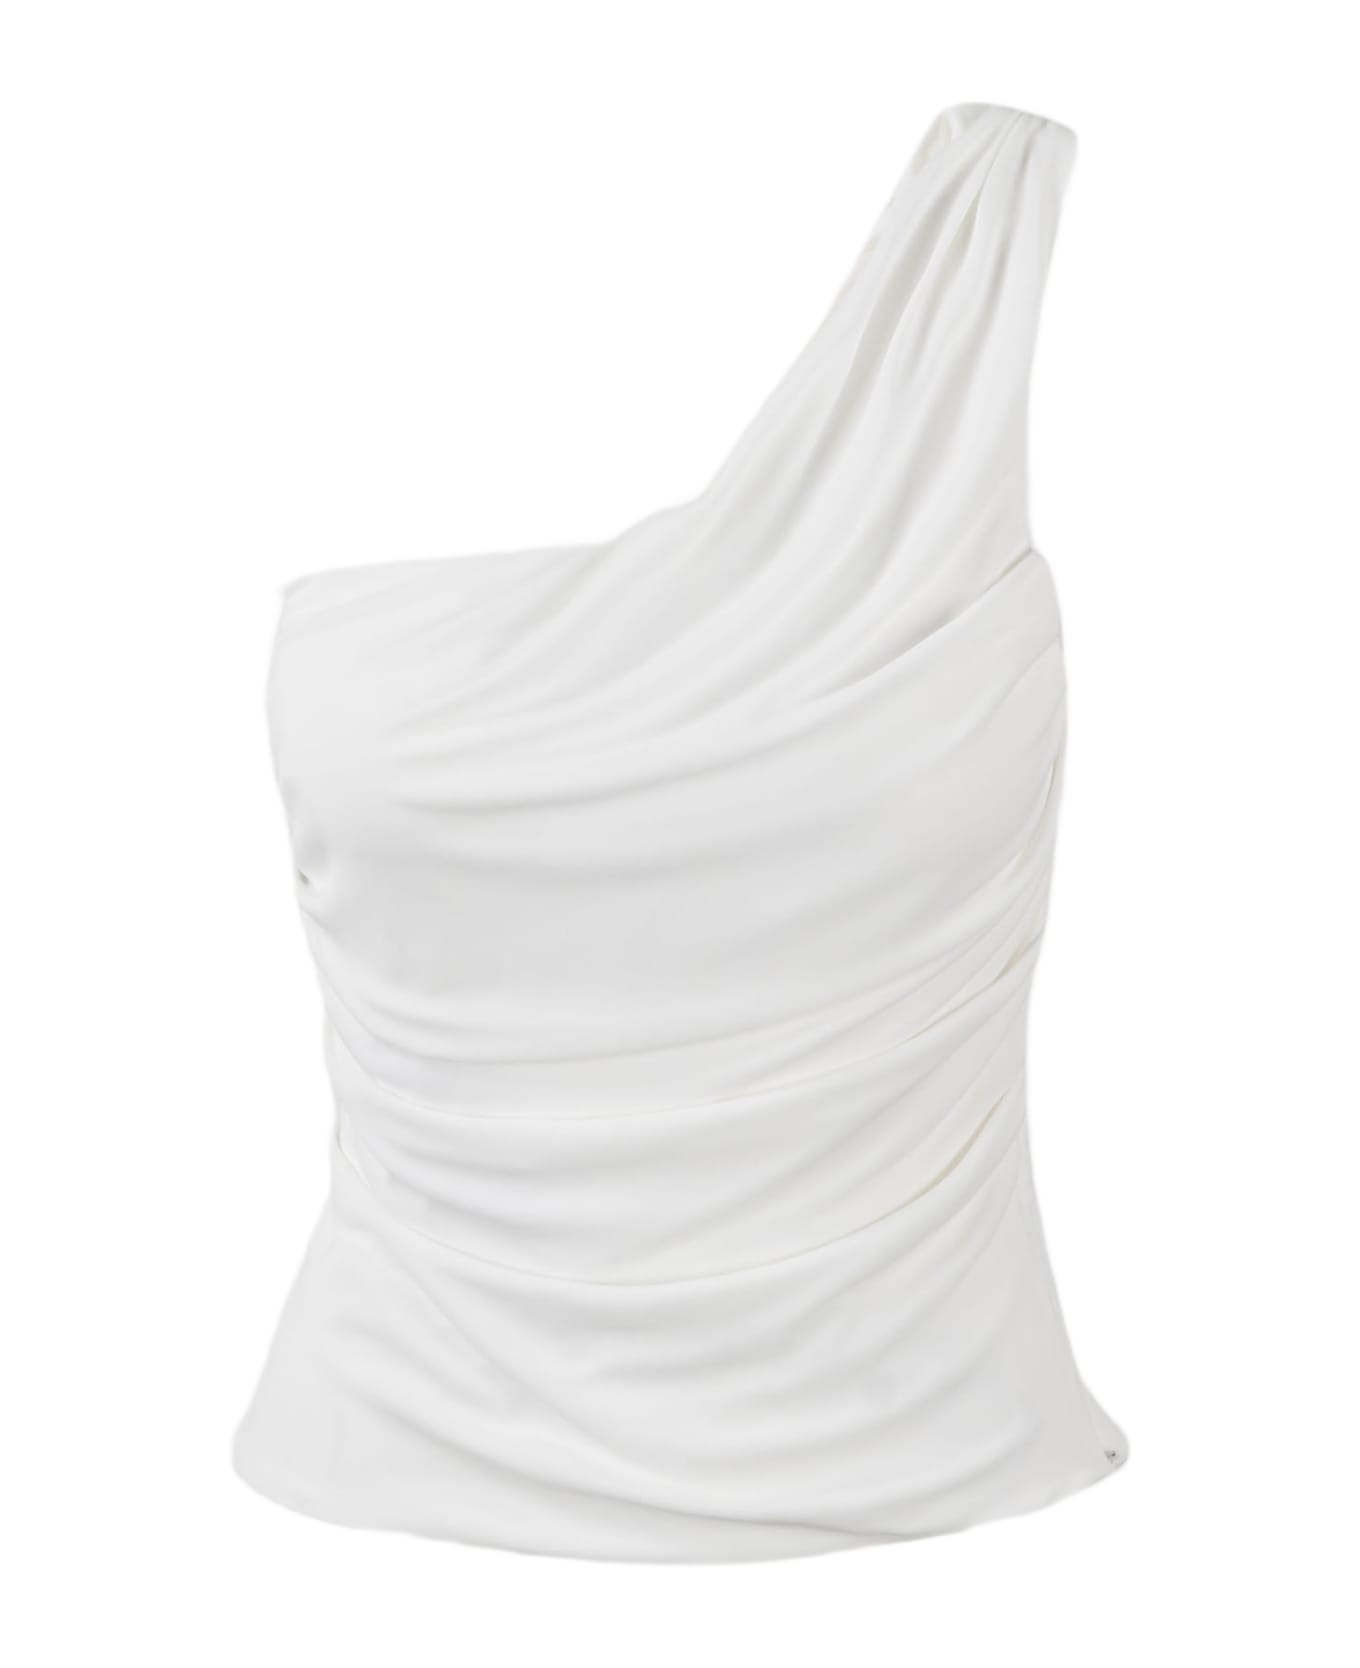 Alberta Ferretti One Shoulder Top - White